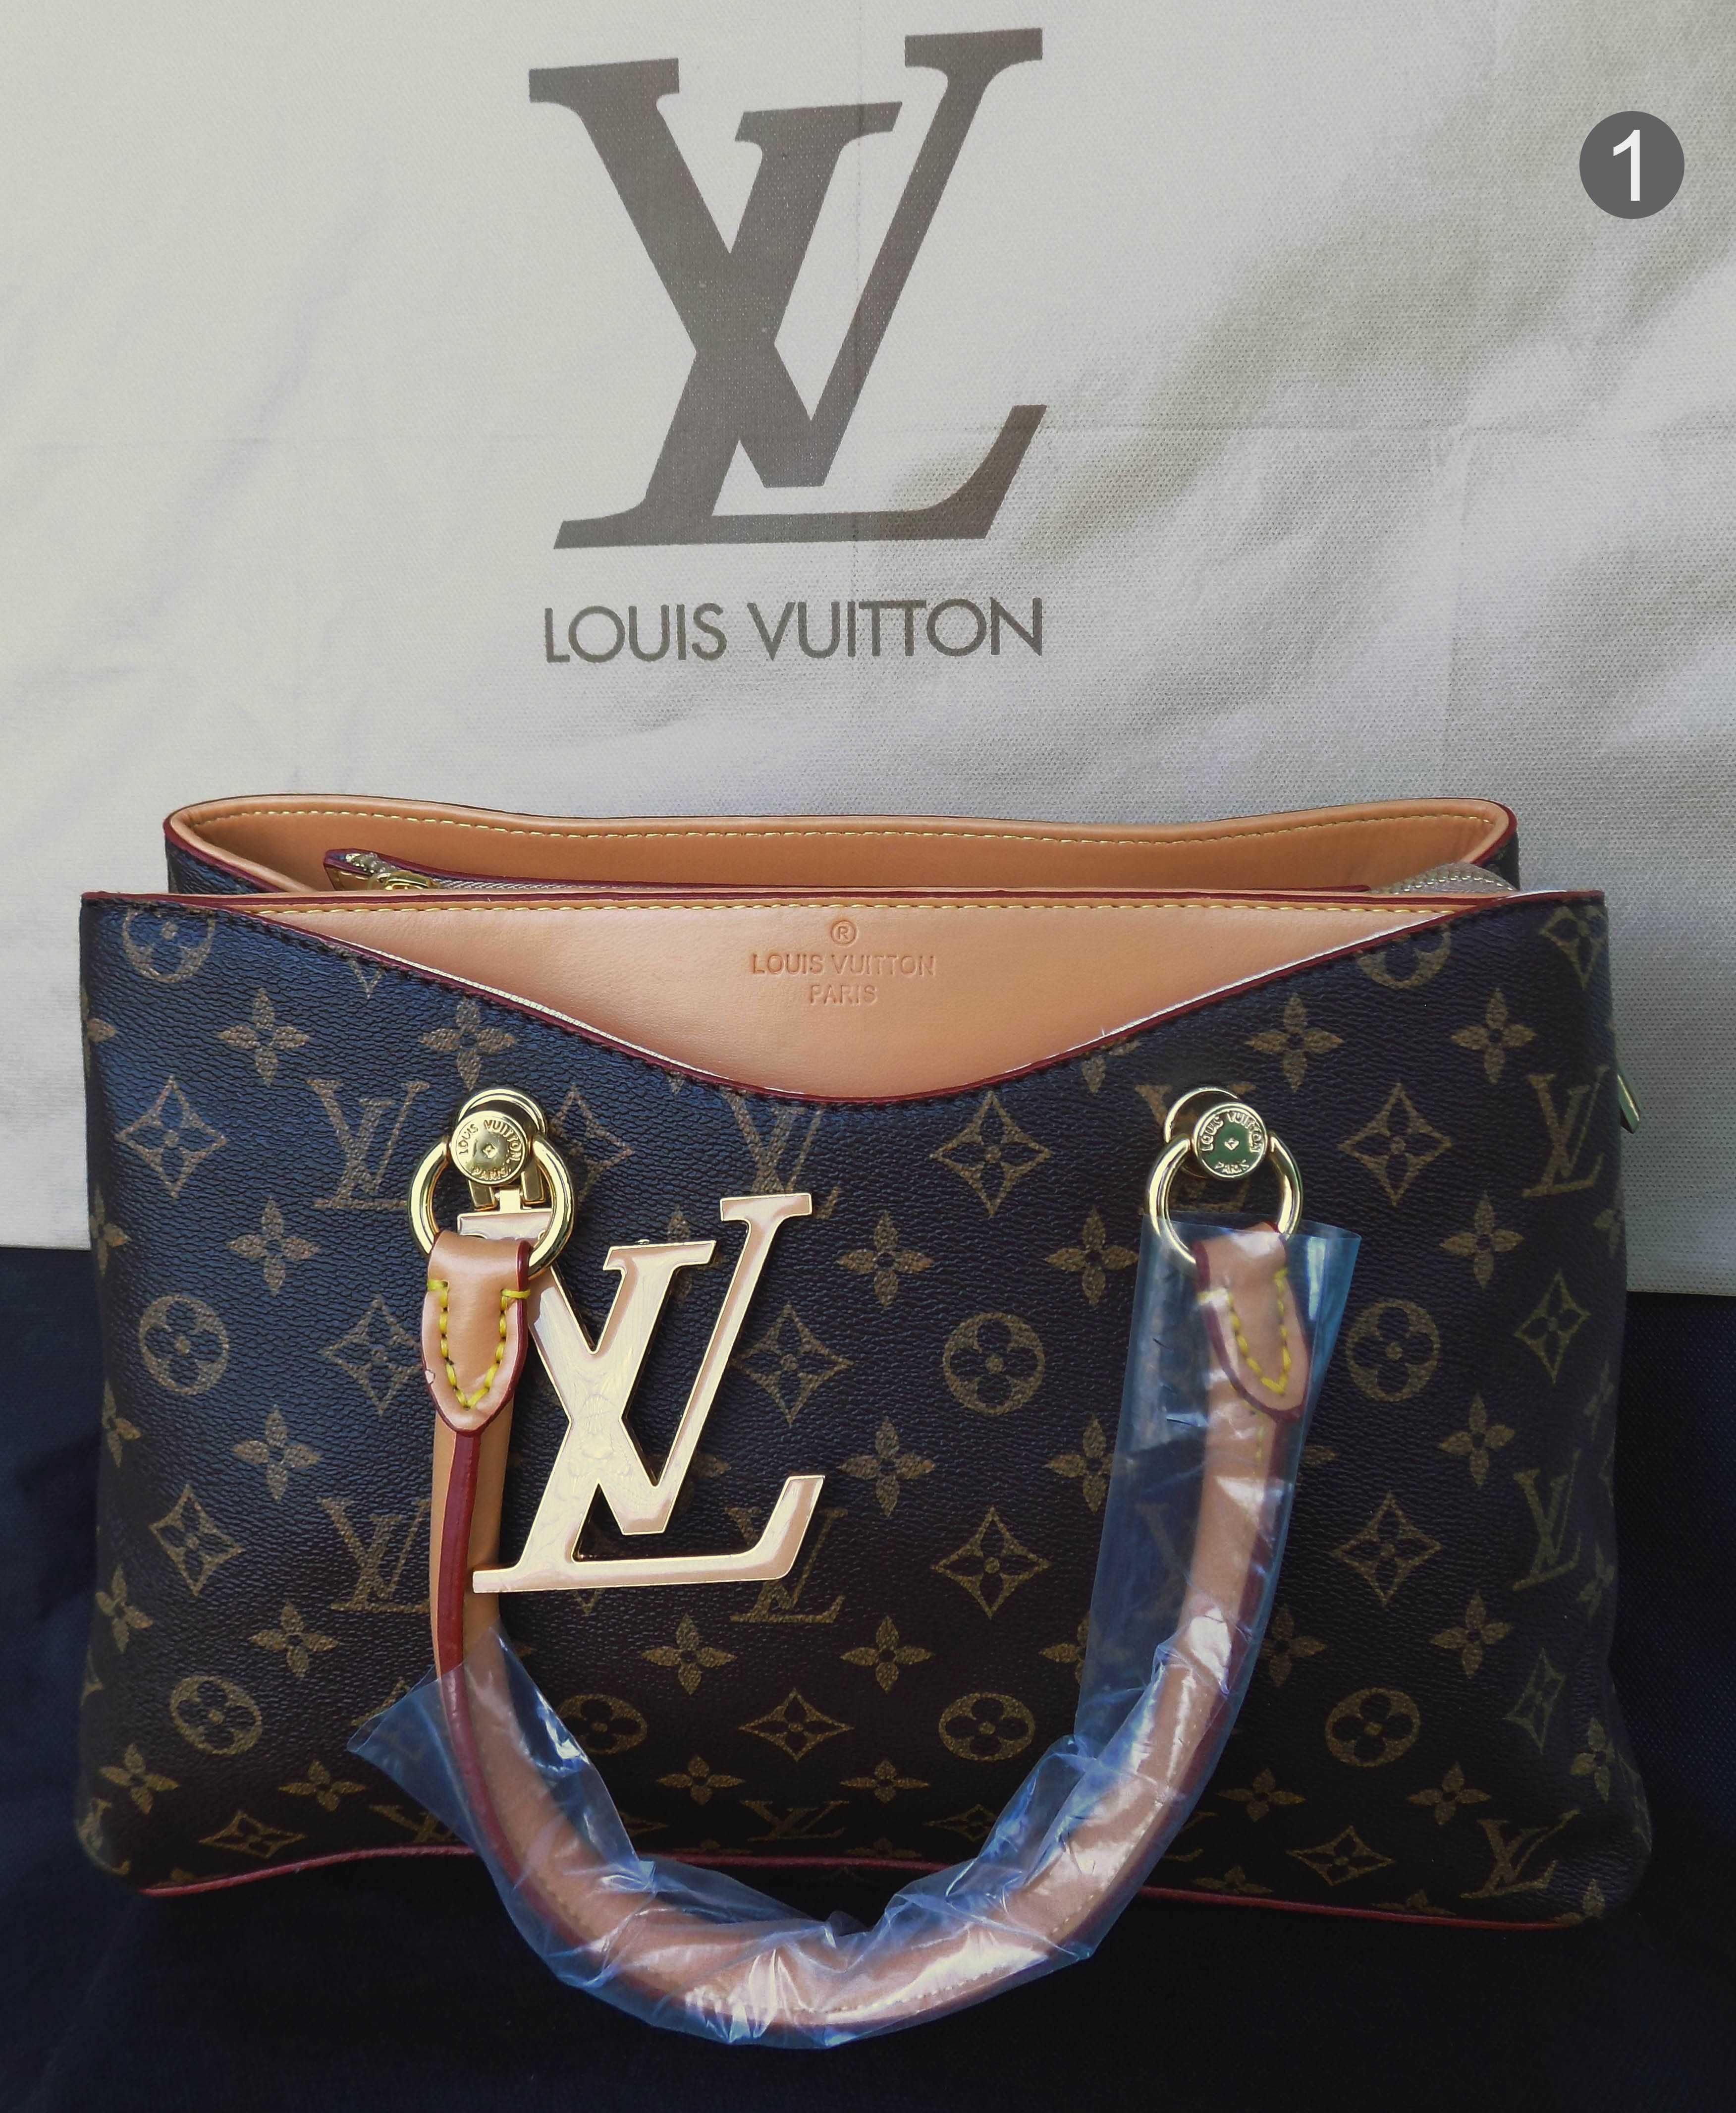 РОЗПРОДАЖ!!!Сумки  Louis Vuitton, Gucci, Prada